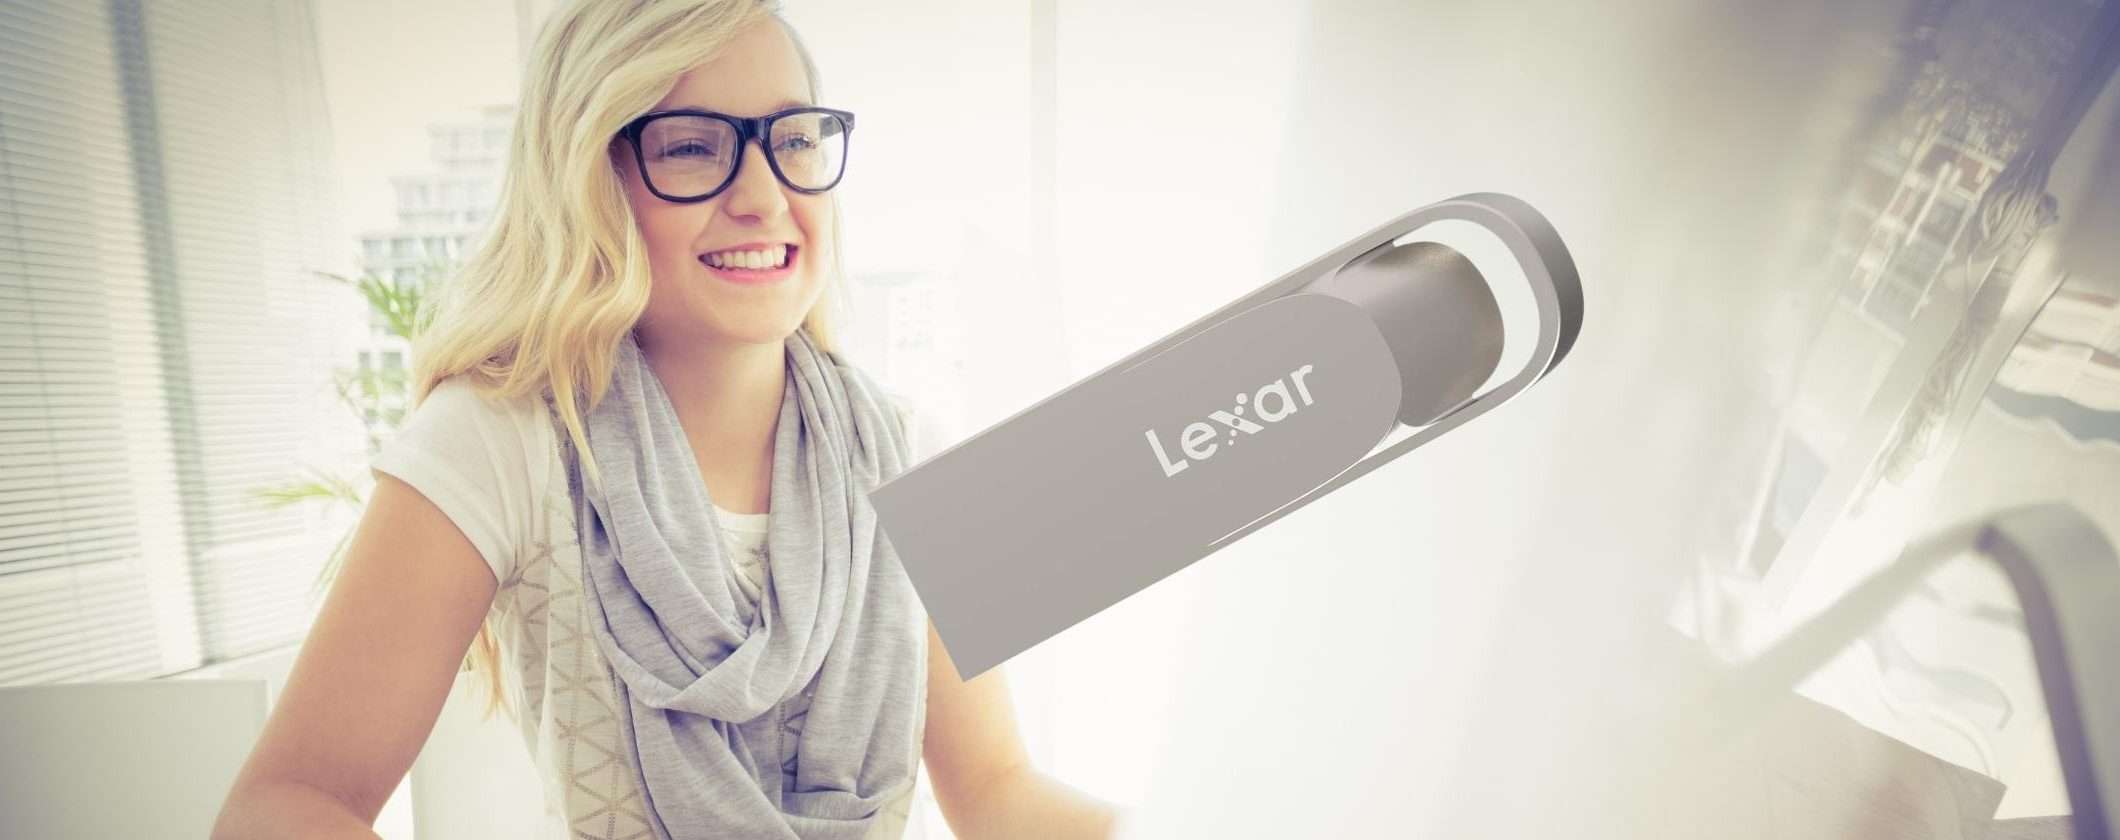 Chiavetta USB Lexar 3.0 da 128 GB scontata del 36% su Amazon